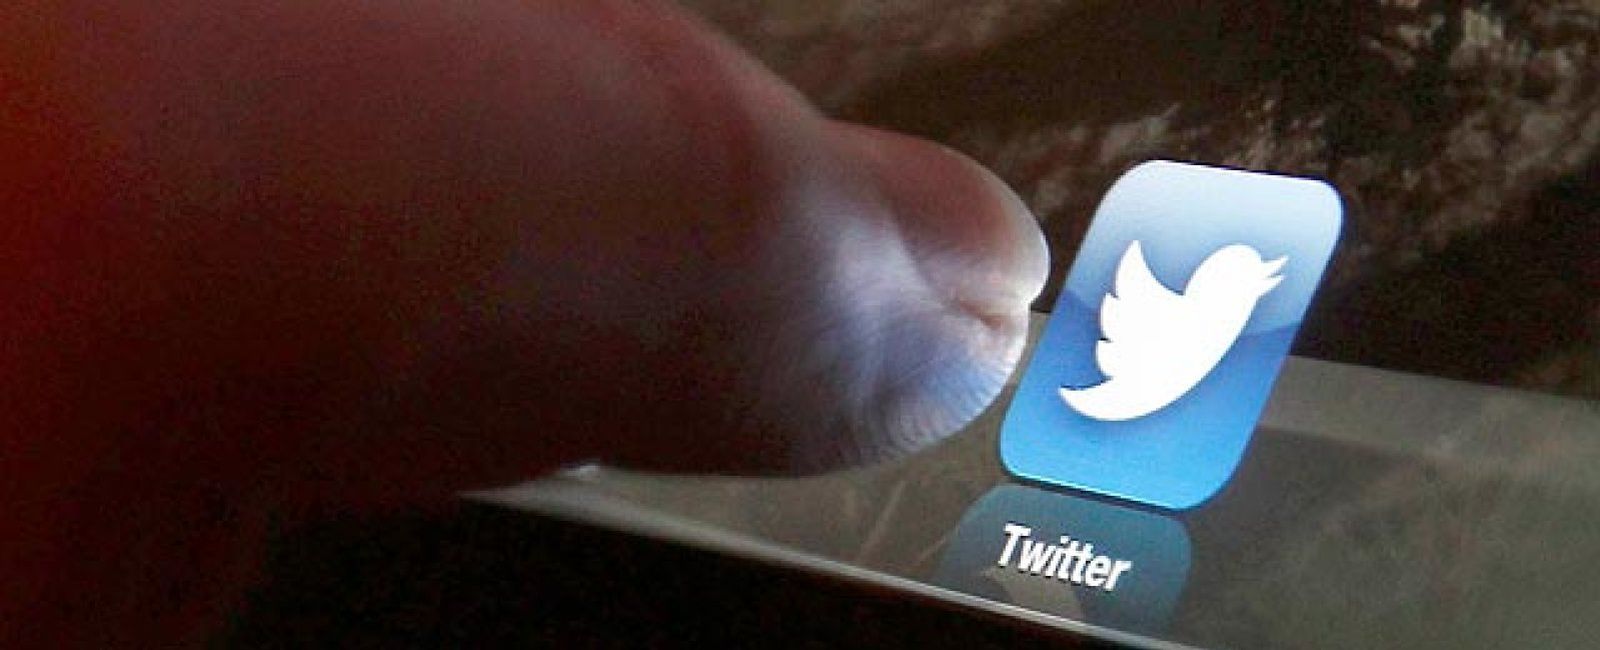 Foto: Los tuits promocionales: un fenómeno -ilegal- que amenaza la credibilidad de Twitter